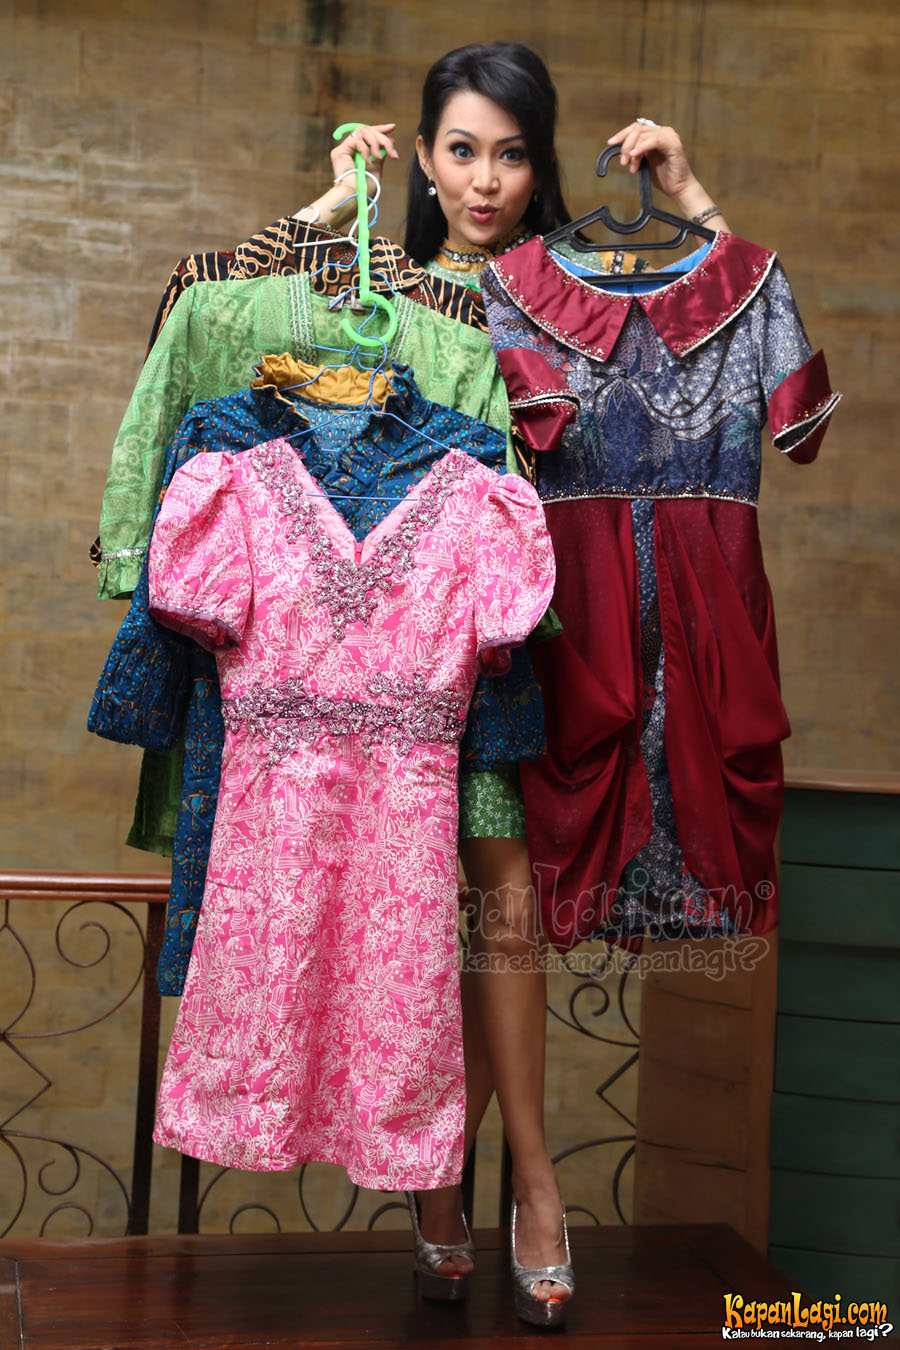 Ratna Listy suka kumpulkan batik. @KapanLagi.com®